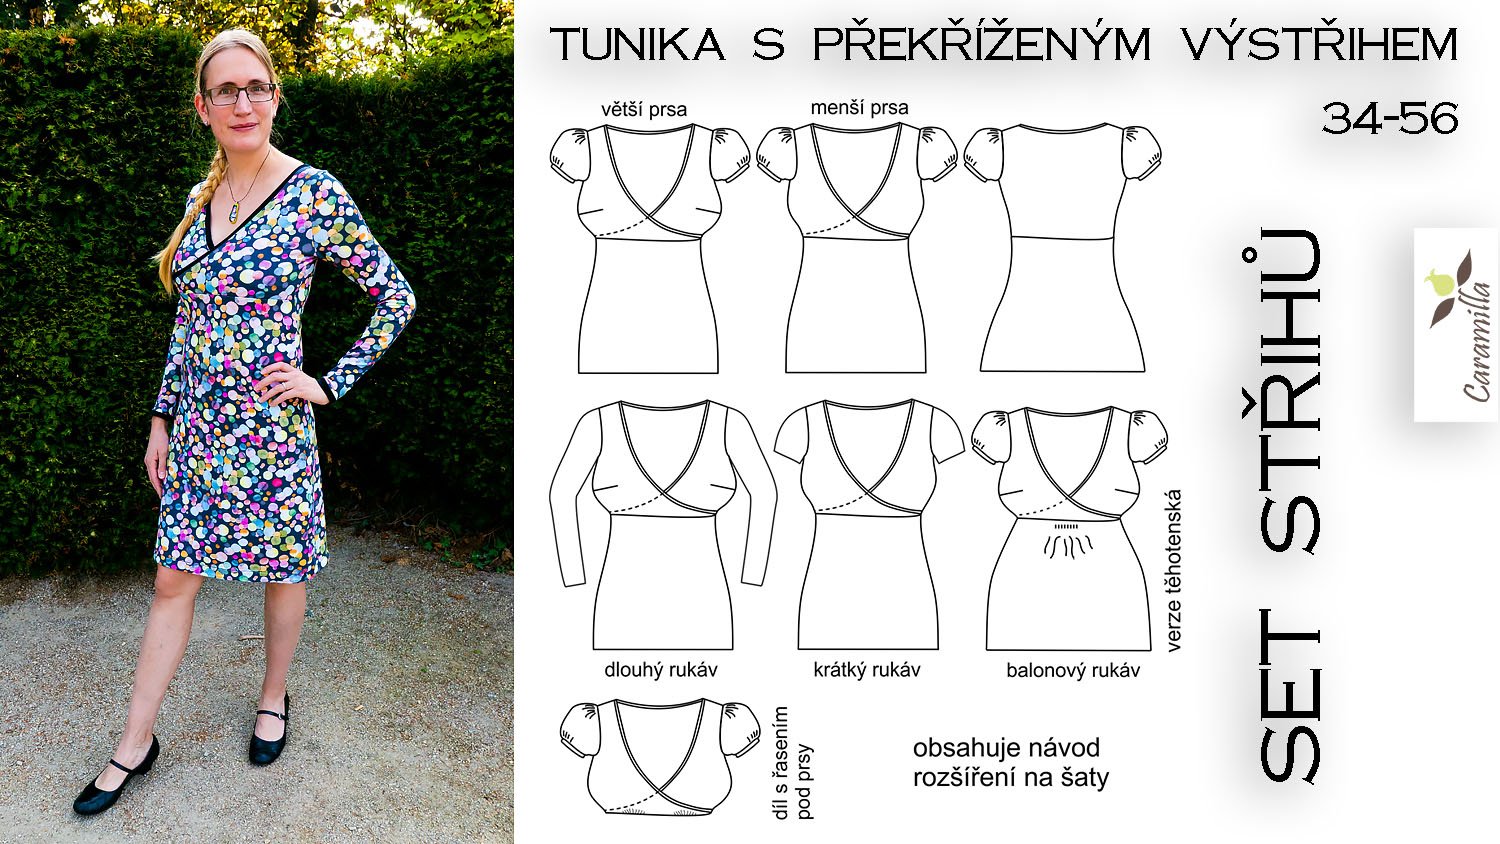 Tunika / Šaty s překříženým výstřihem a balonovými rukávy (střih a návod)